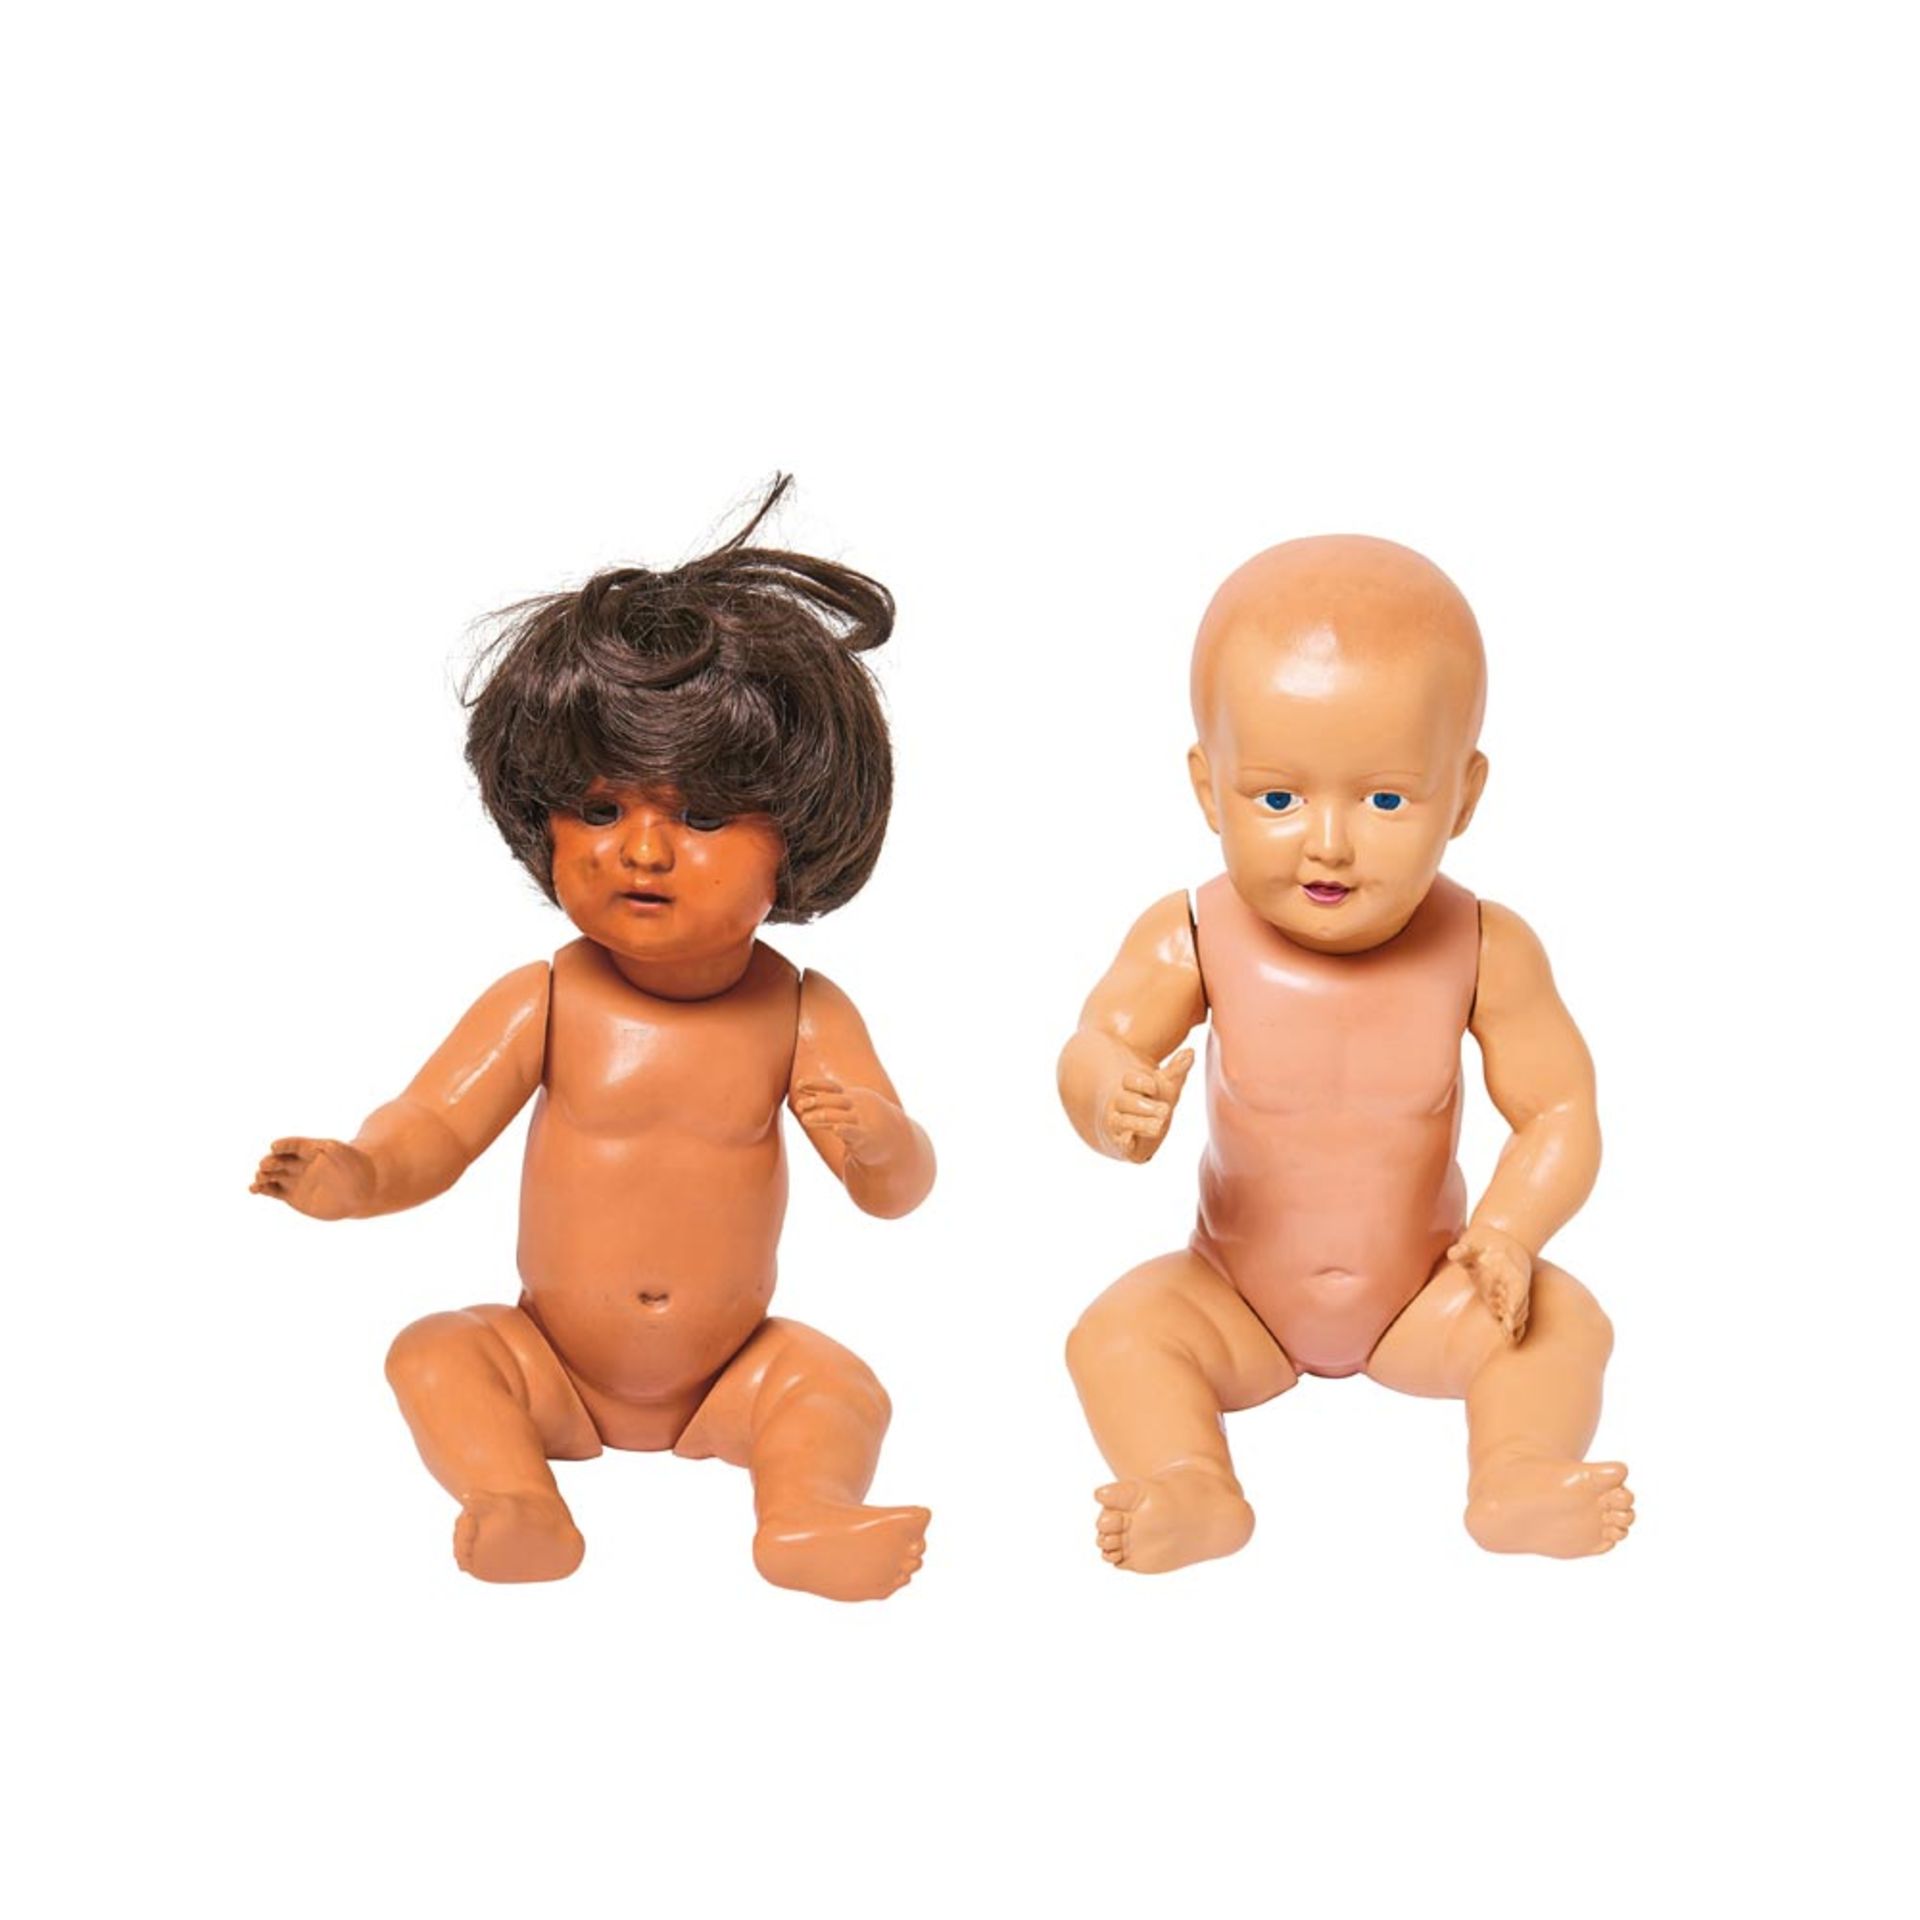 Lote de muñeca y muñeco bebé alemanes Schutz marke en celuloide, segundo cuarto del s.XX. Uno con